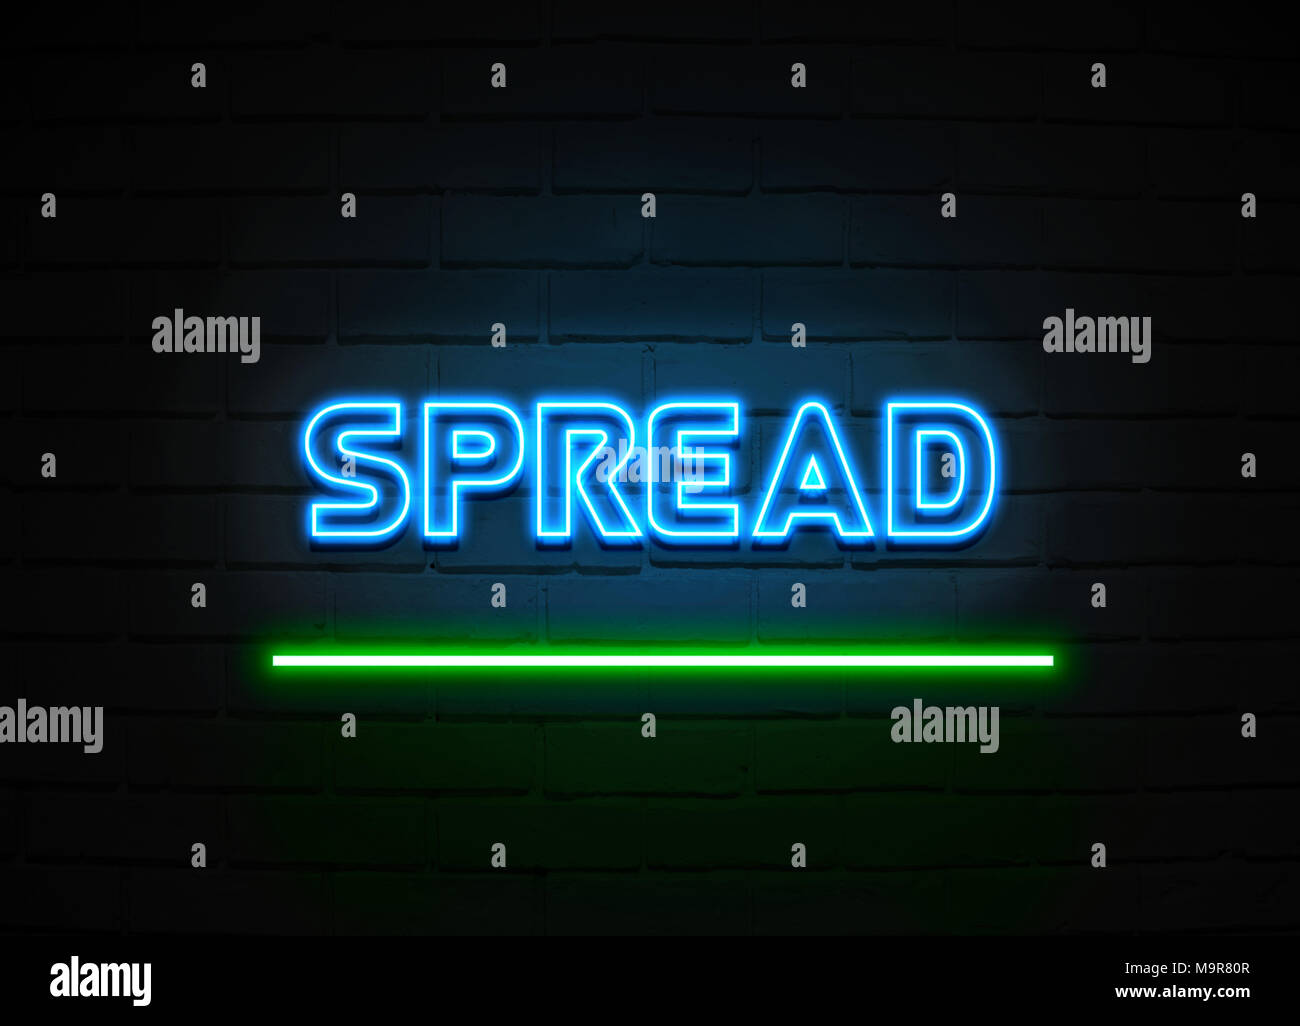 Verbreitung Leuchtreklame - glühende Leuchtreklame auf brickwall Wand - 3D-Royalty Free Stock Illustration dargestellt. Stockfoto